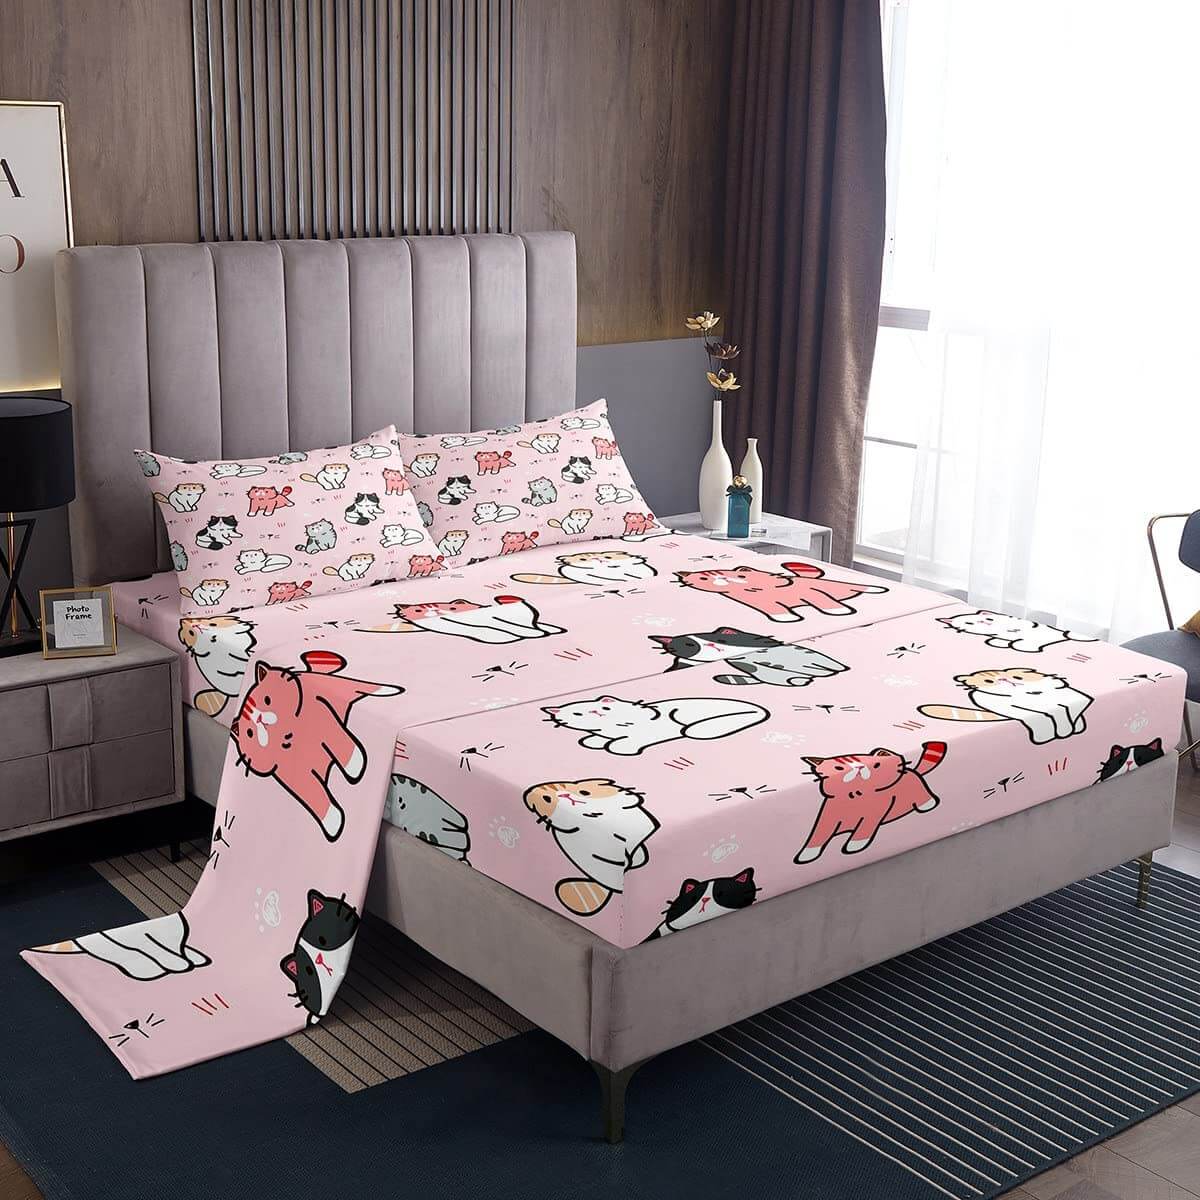 Комплект постельного белья для детей Erosebridal Cat Lover's Animal, 4 предмета, розовый/мультиколо